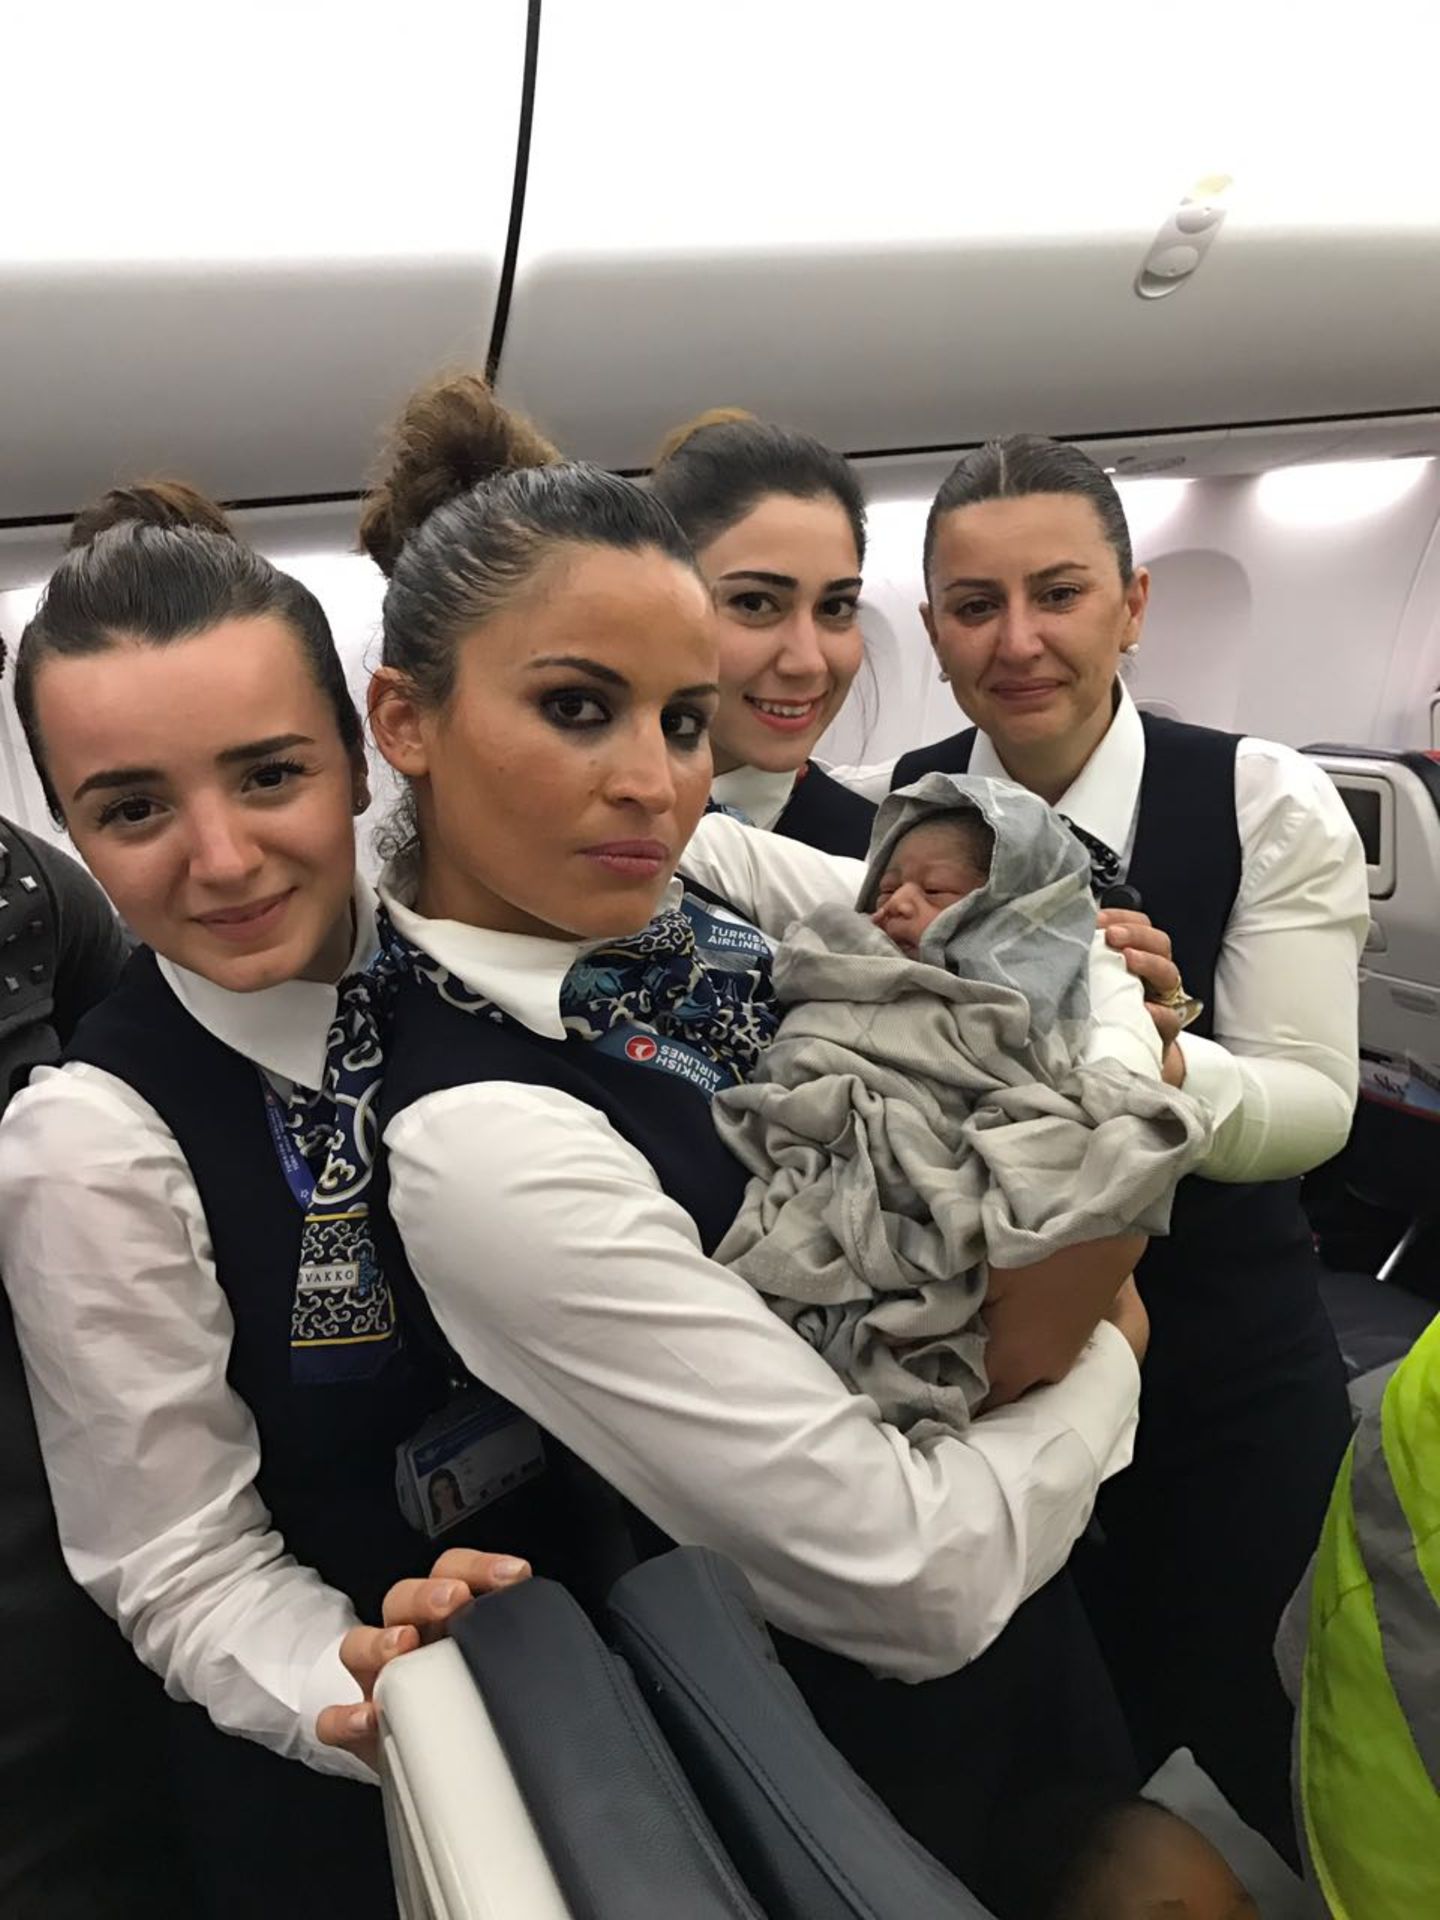 Himmlischer Geburtsort in einem Flugzeug: Die Flugbegleiter halten die kleine in Decken gewickelte "Kadiju" im Arm.